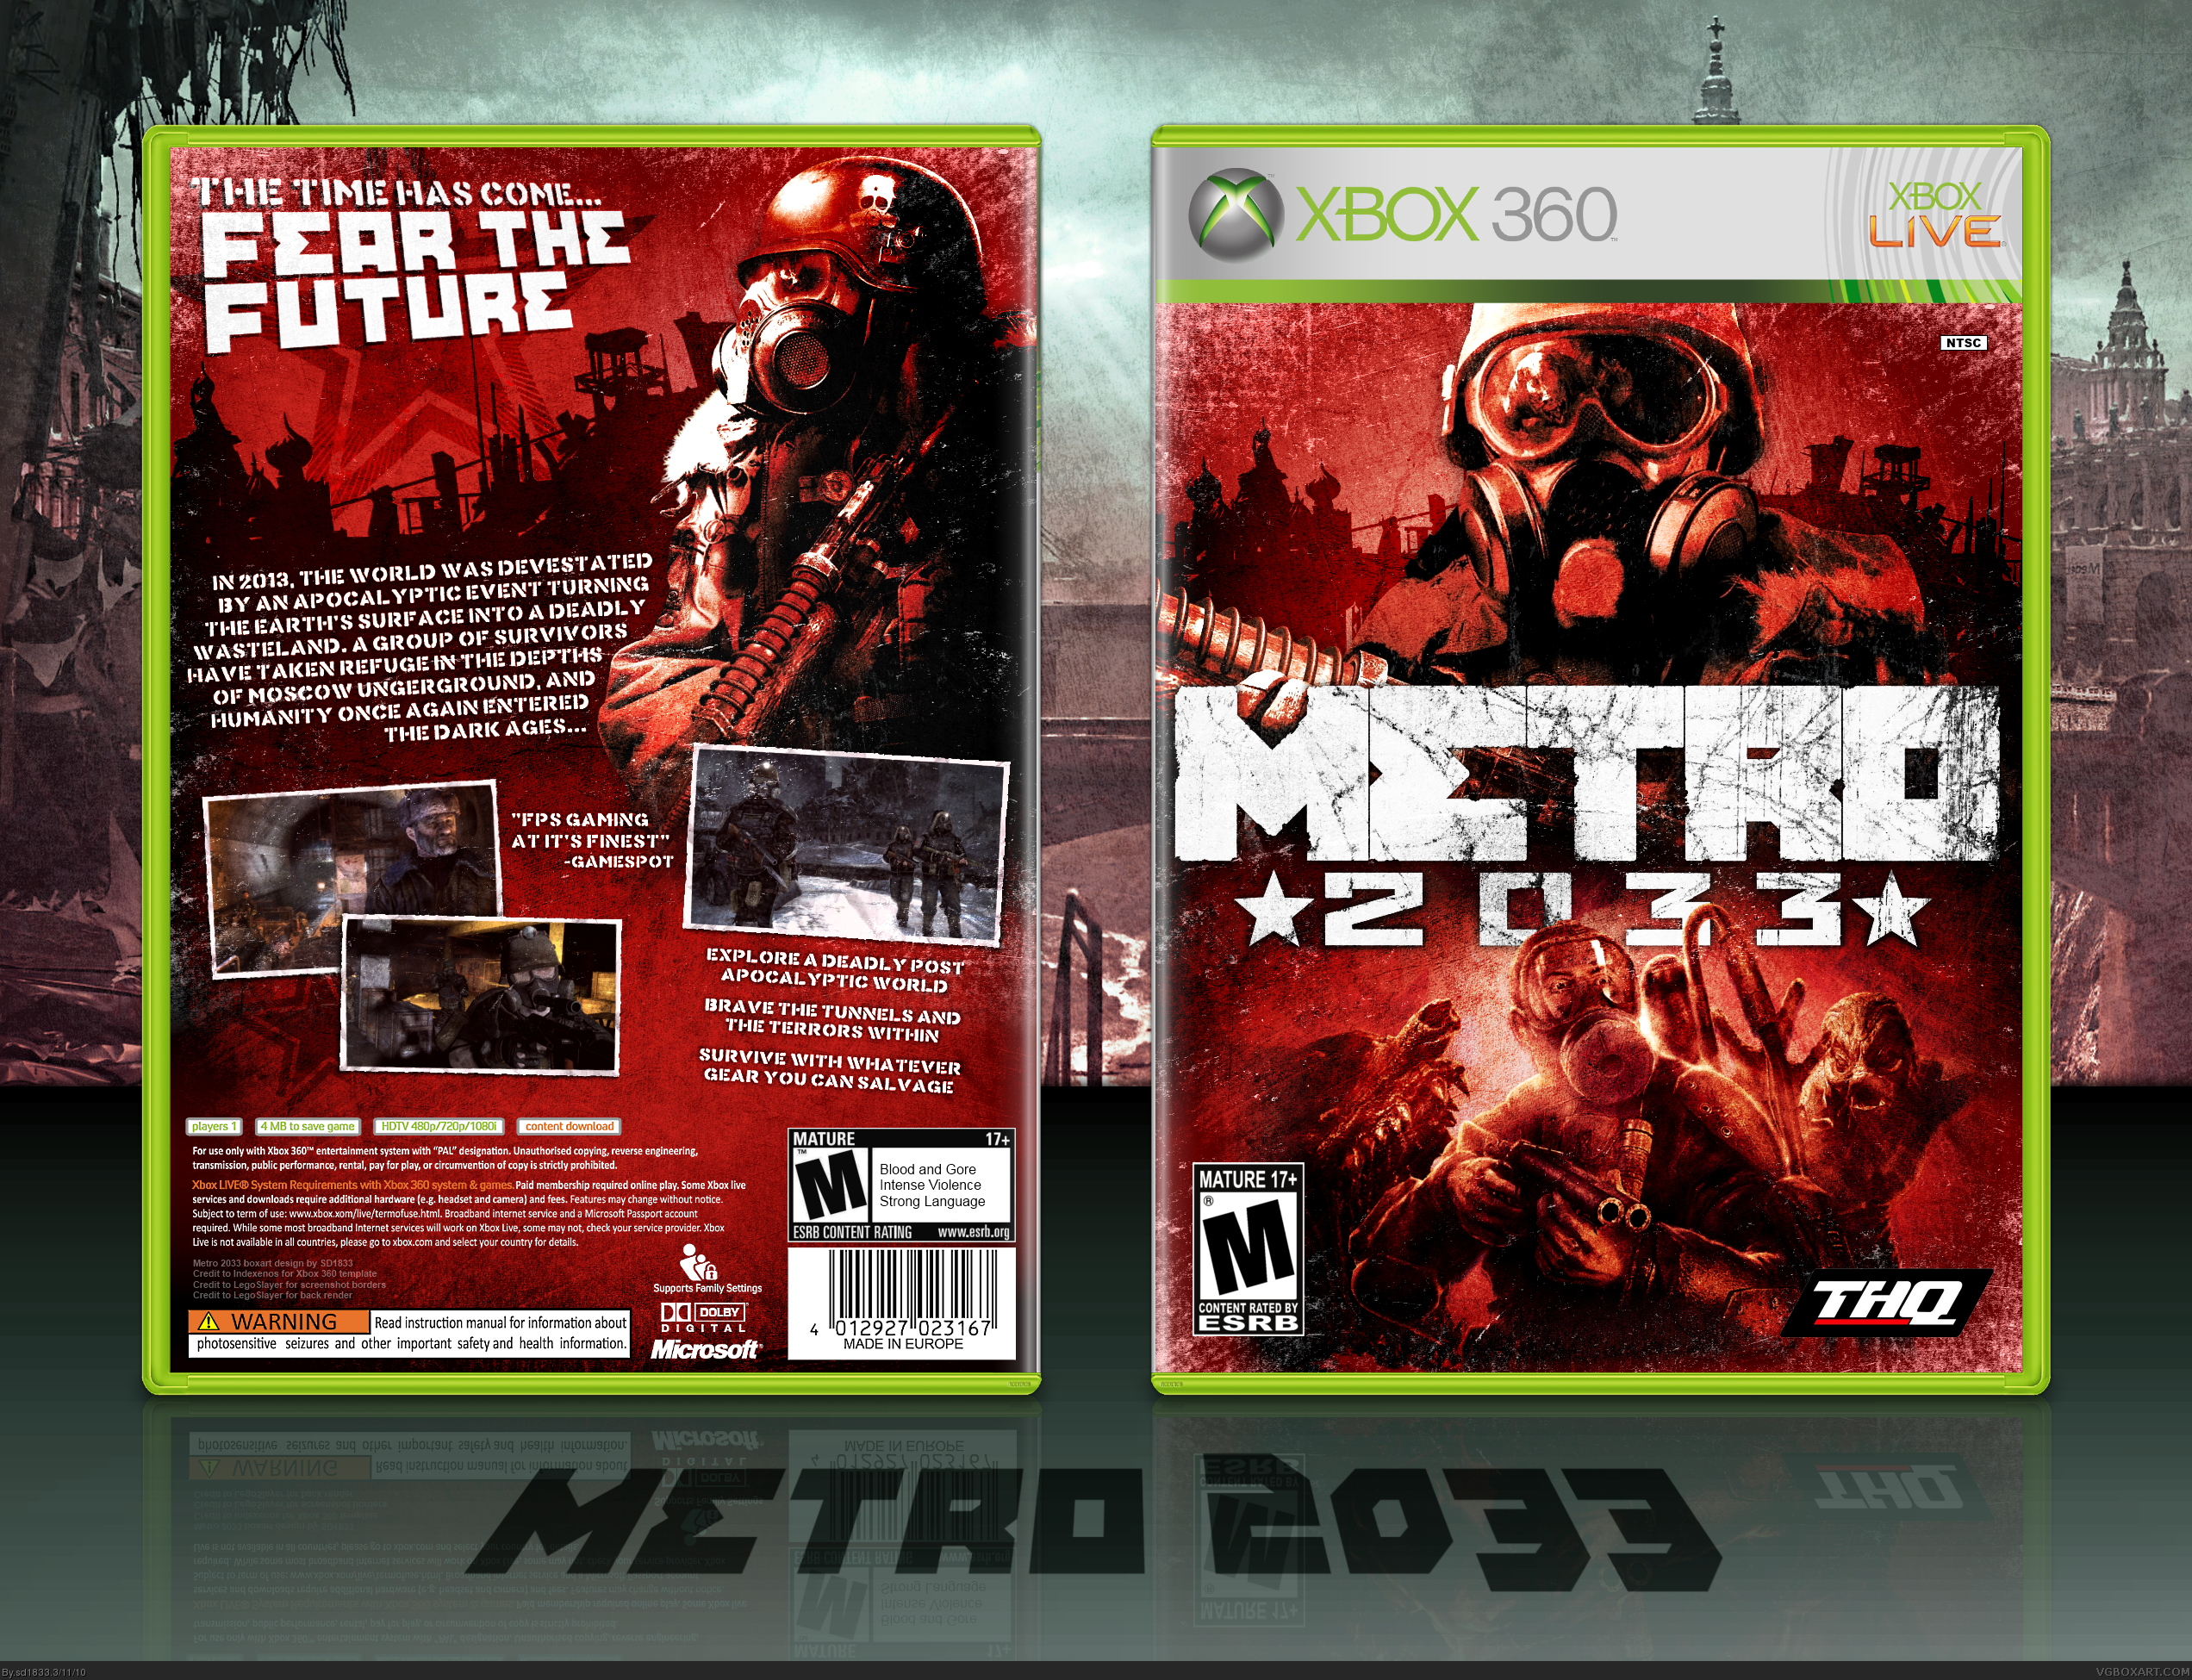 Метро на пс3. Диск Xbox 360 Metro 2033. Metro 2033 Xbox 360 обложка. Метро 2033 диск на Xbox 360. Метро 2033 на хбокс 360.